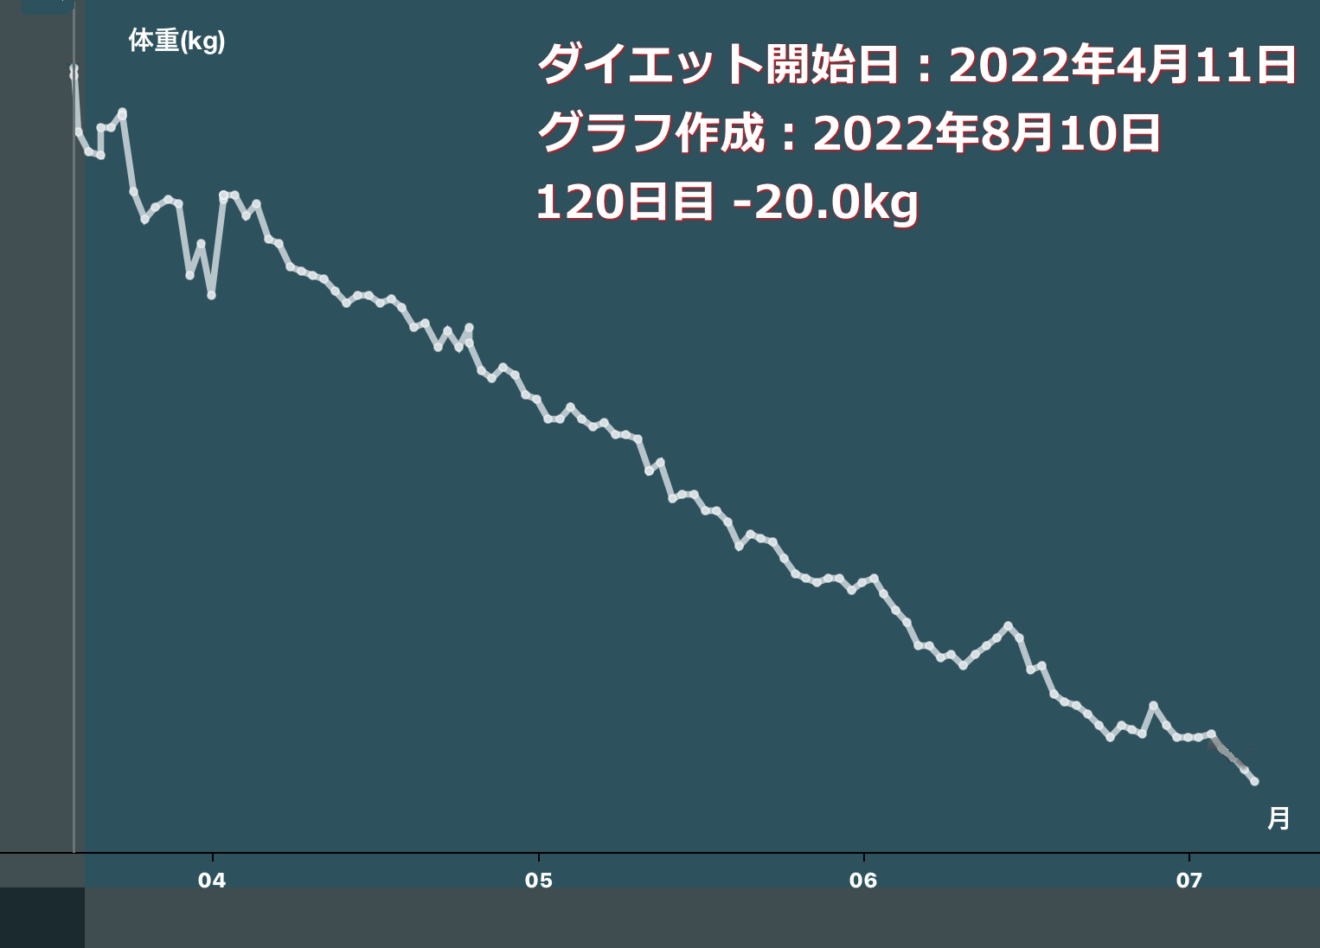 中沢康彦／ダイエット開始4か月で-20kgになりました。昨日のダイエット日記